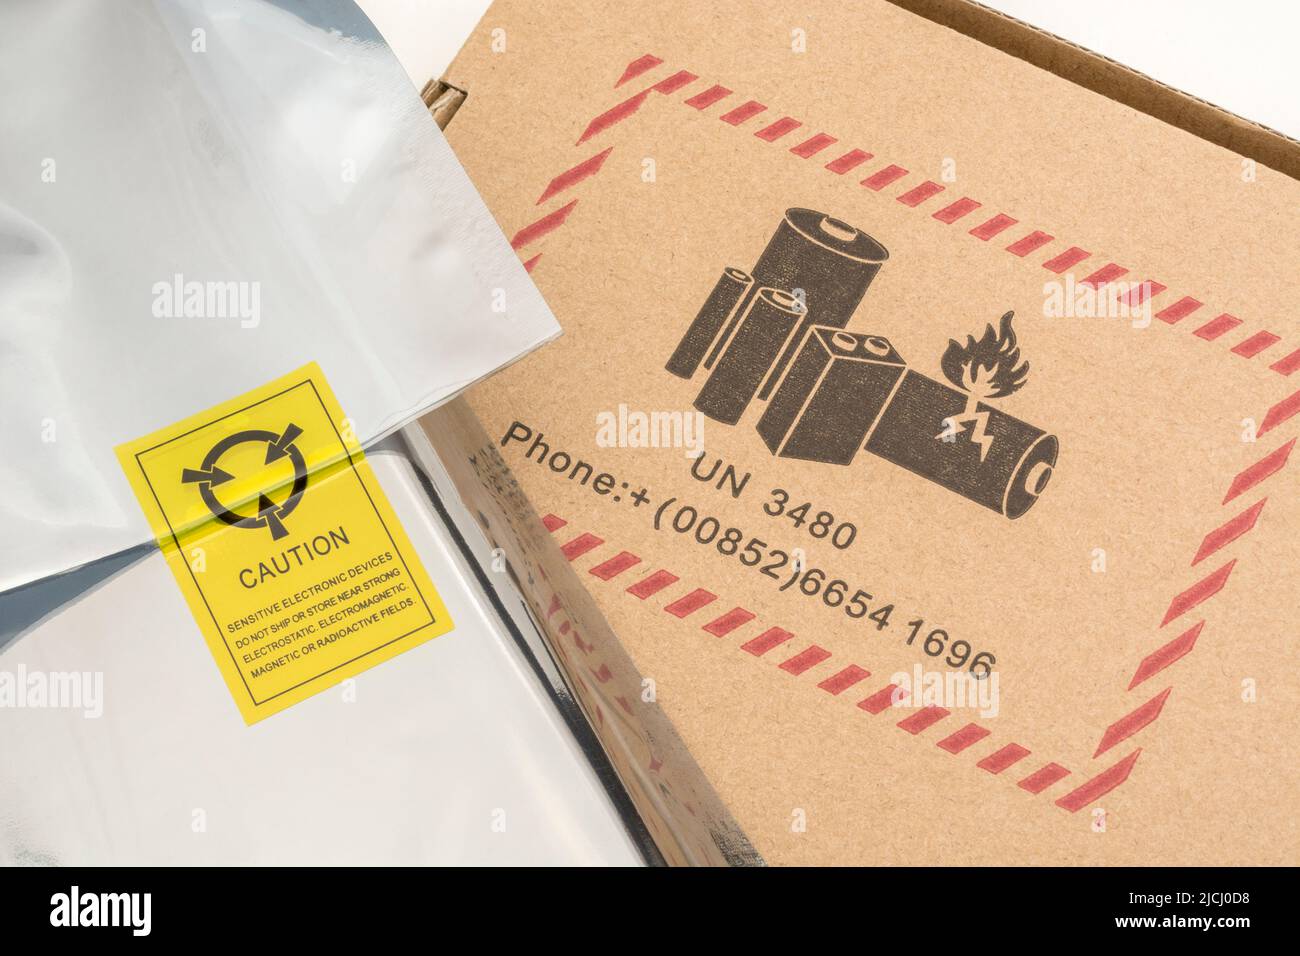 Bolsa de plástico plateada antiestática con un símbolo de advertencia antiestático y embalaje de cartón con un símbolo de advertencia de peligro de batería UN 3480. Foto de stock